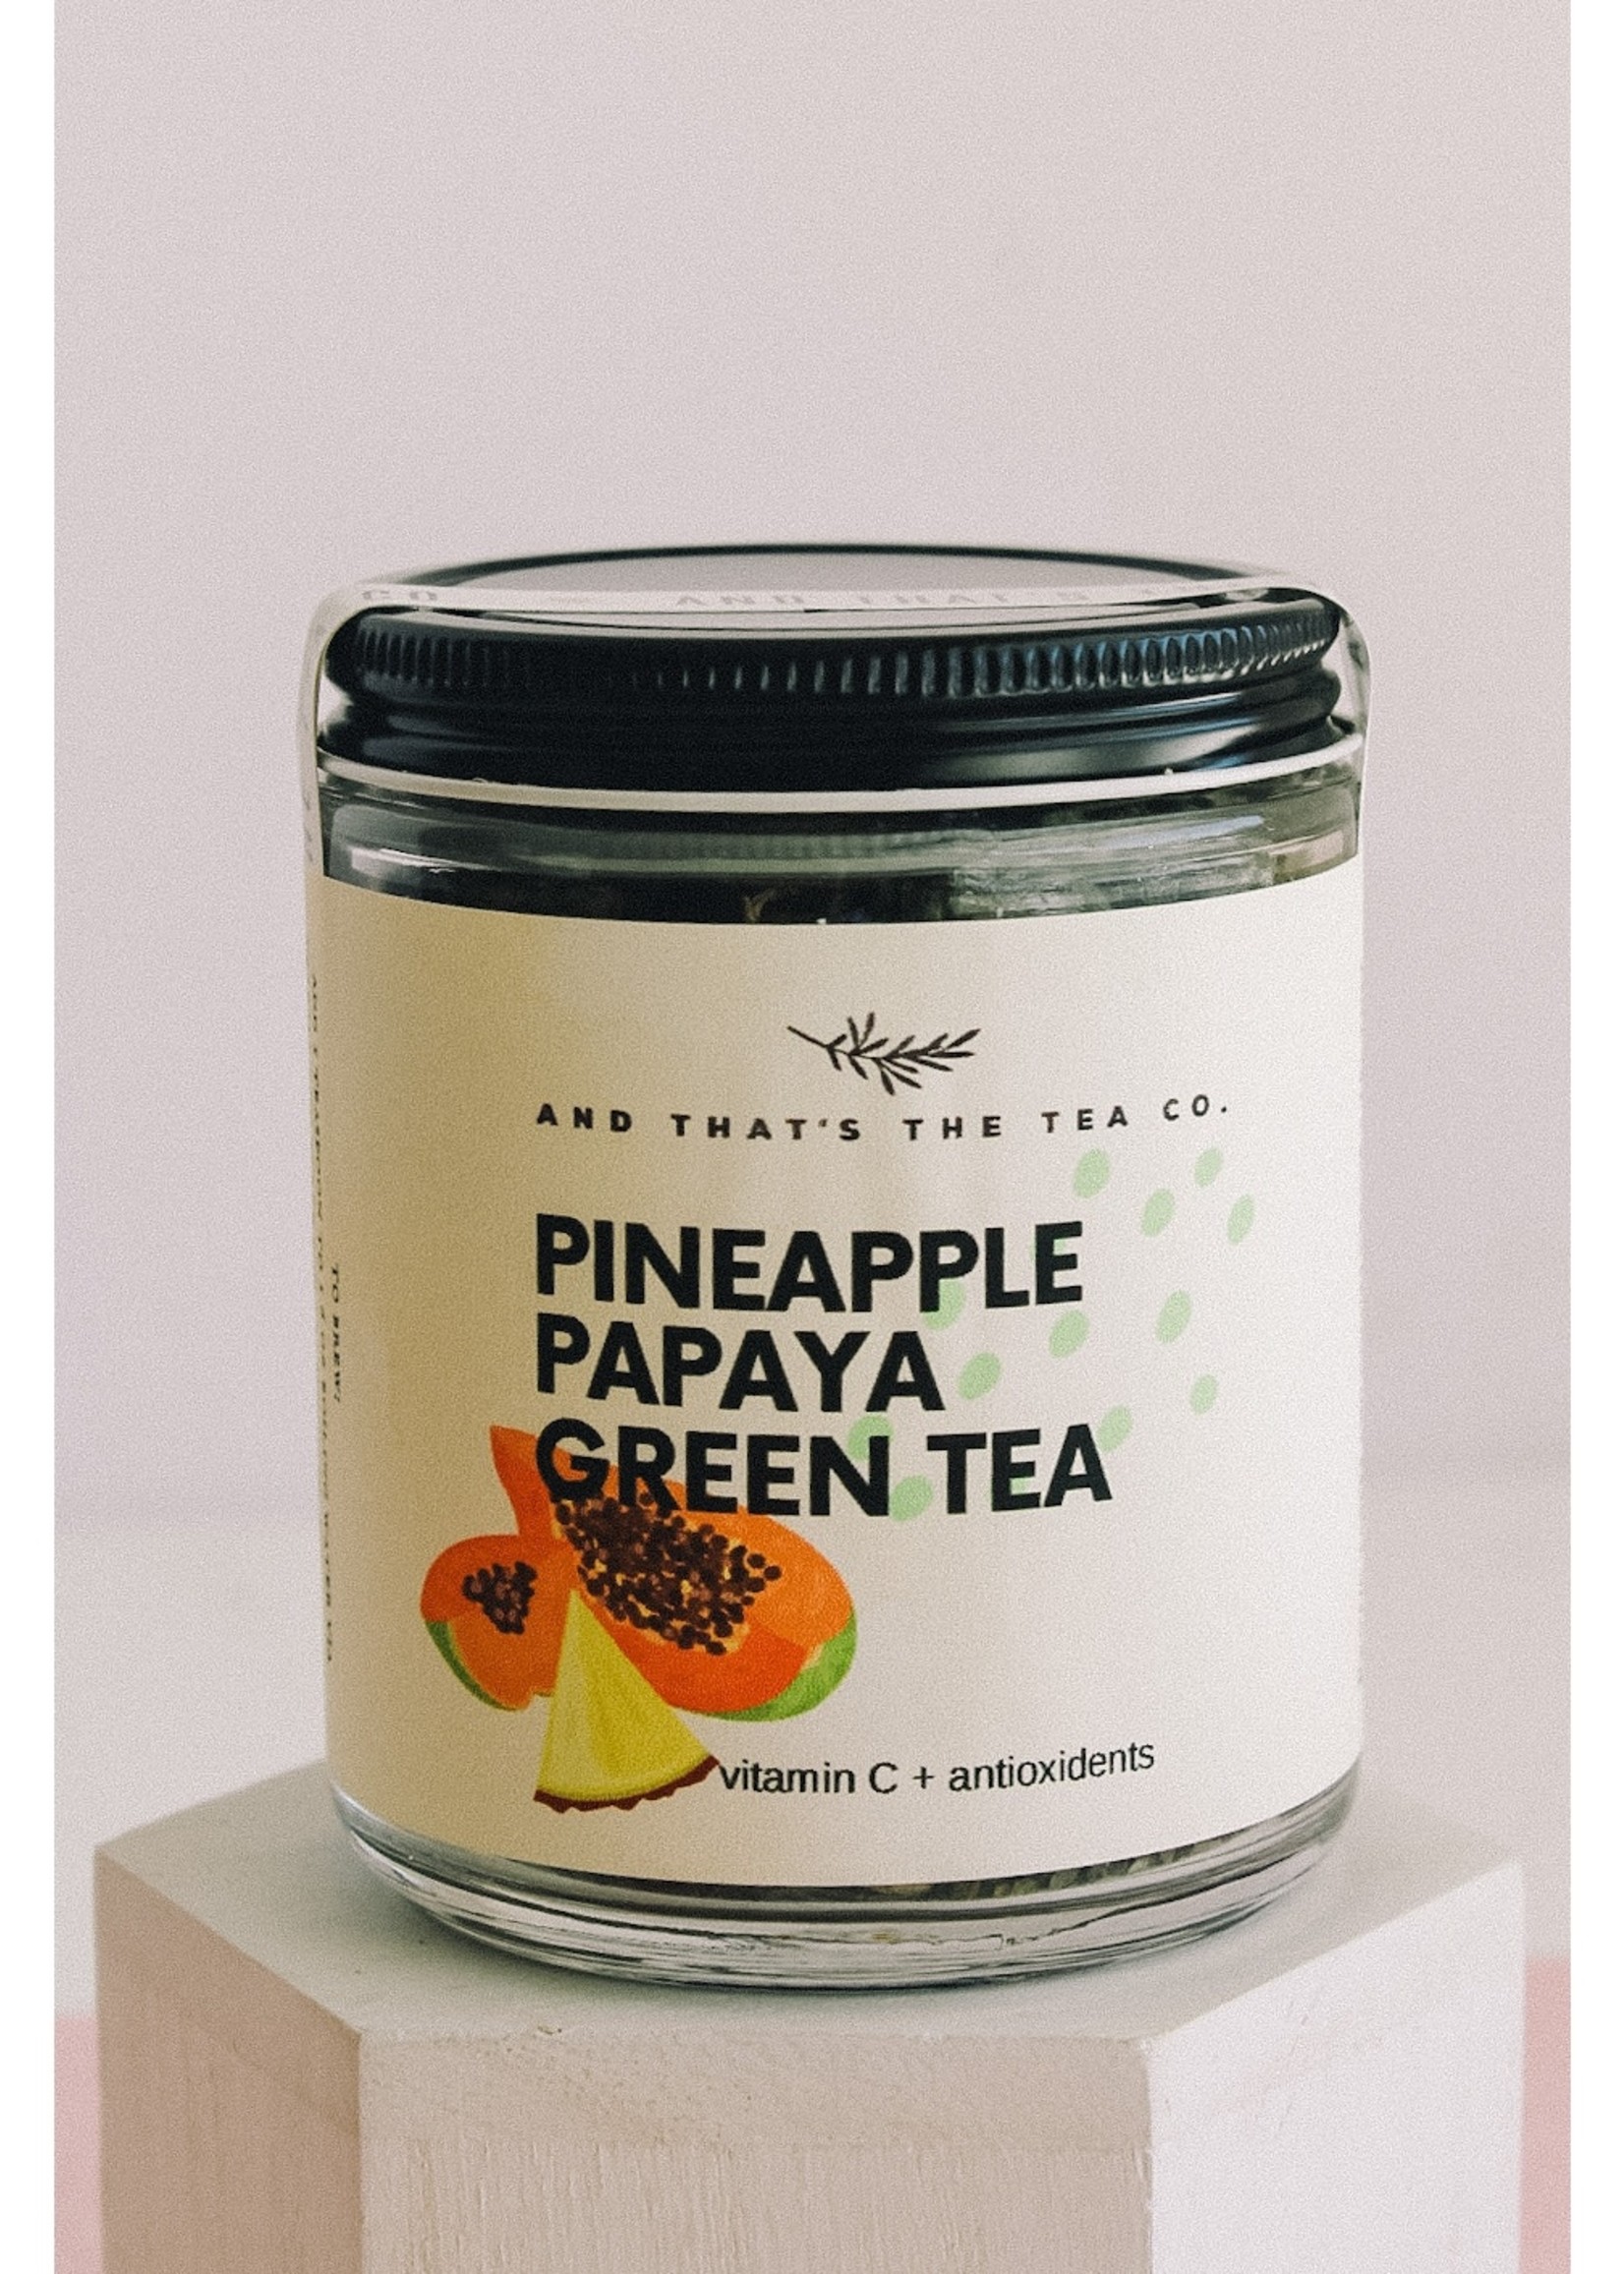 And That's The Tea Co. Pineapple Papaya Green Tea